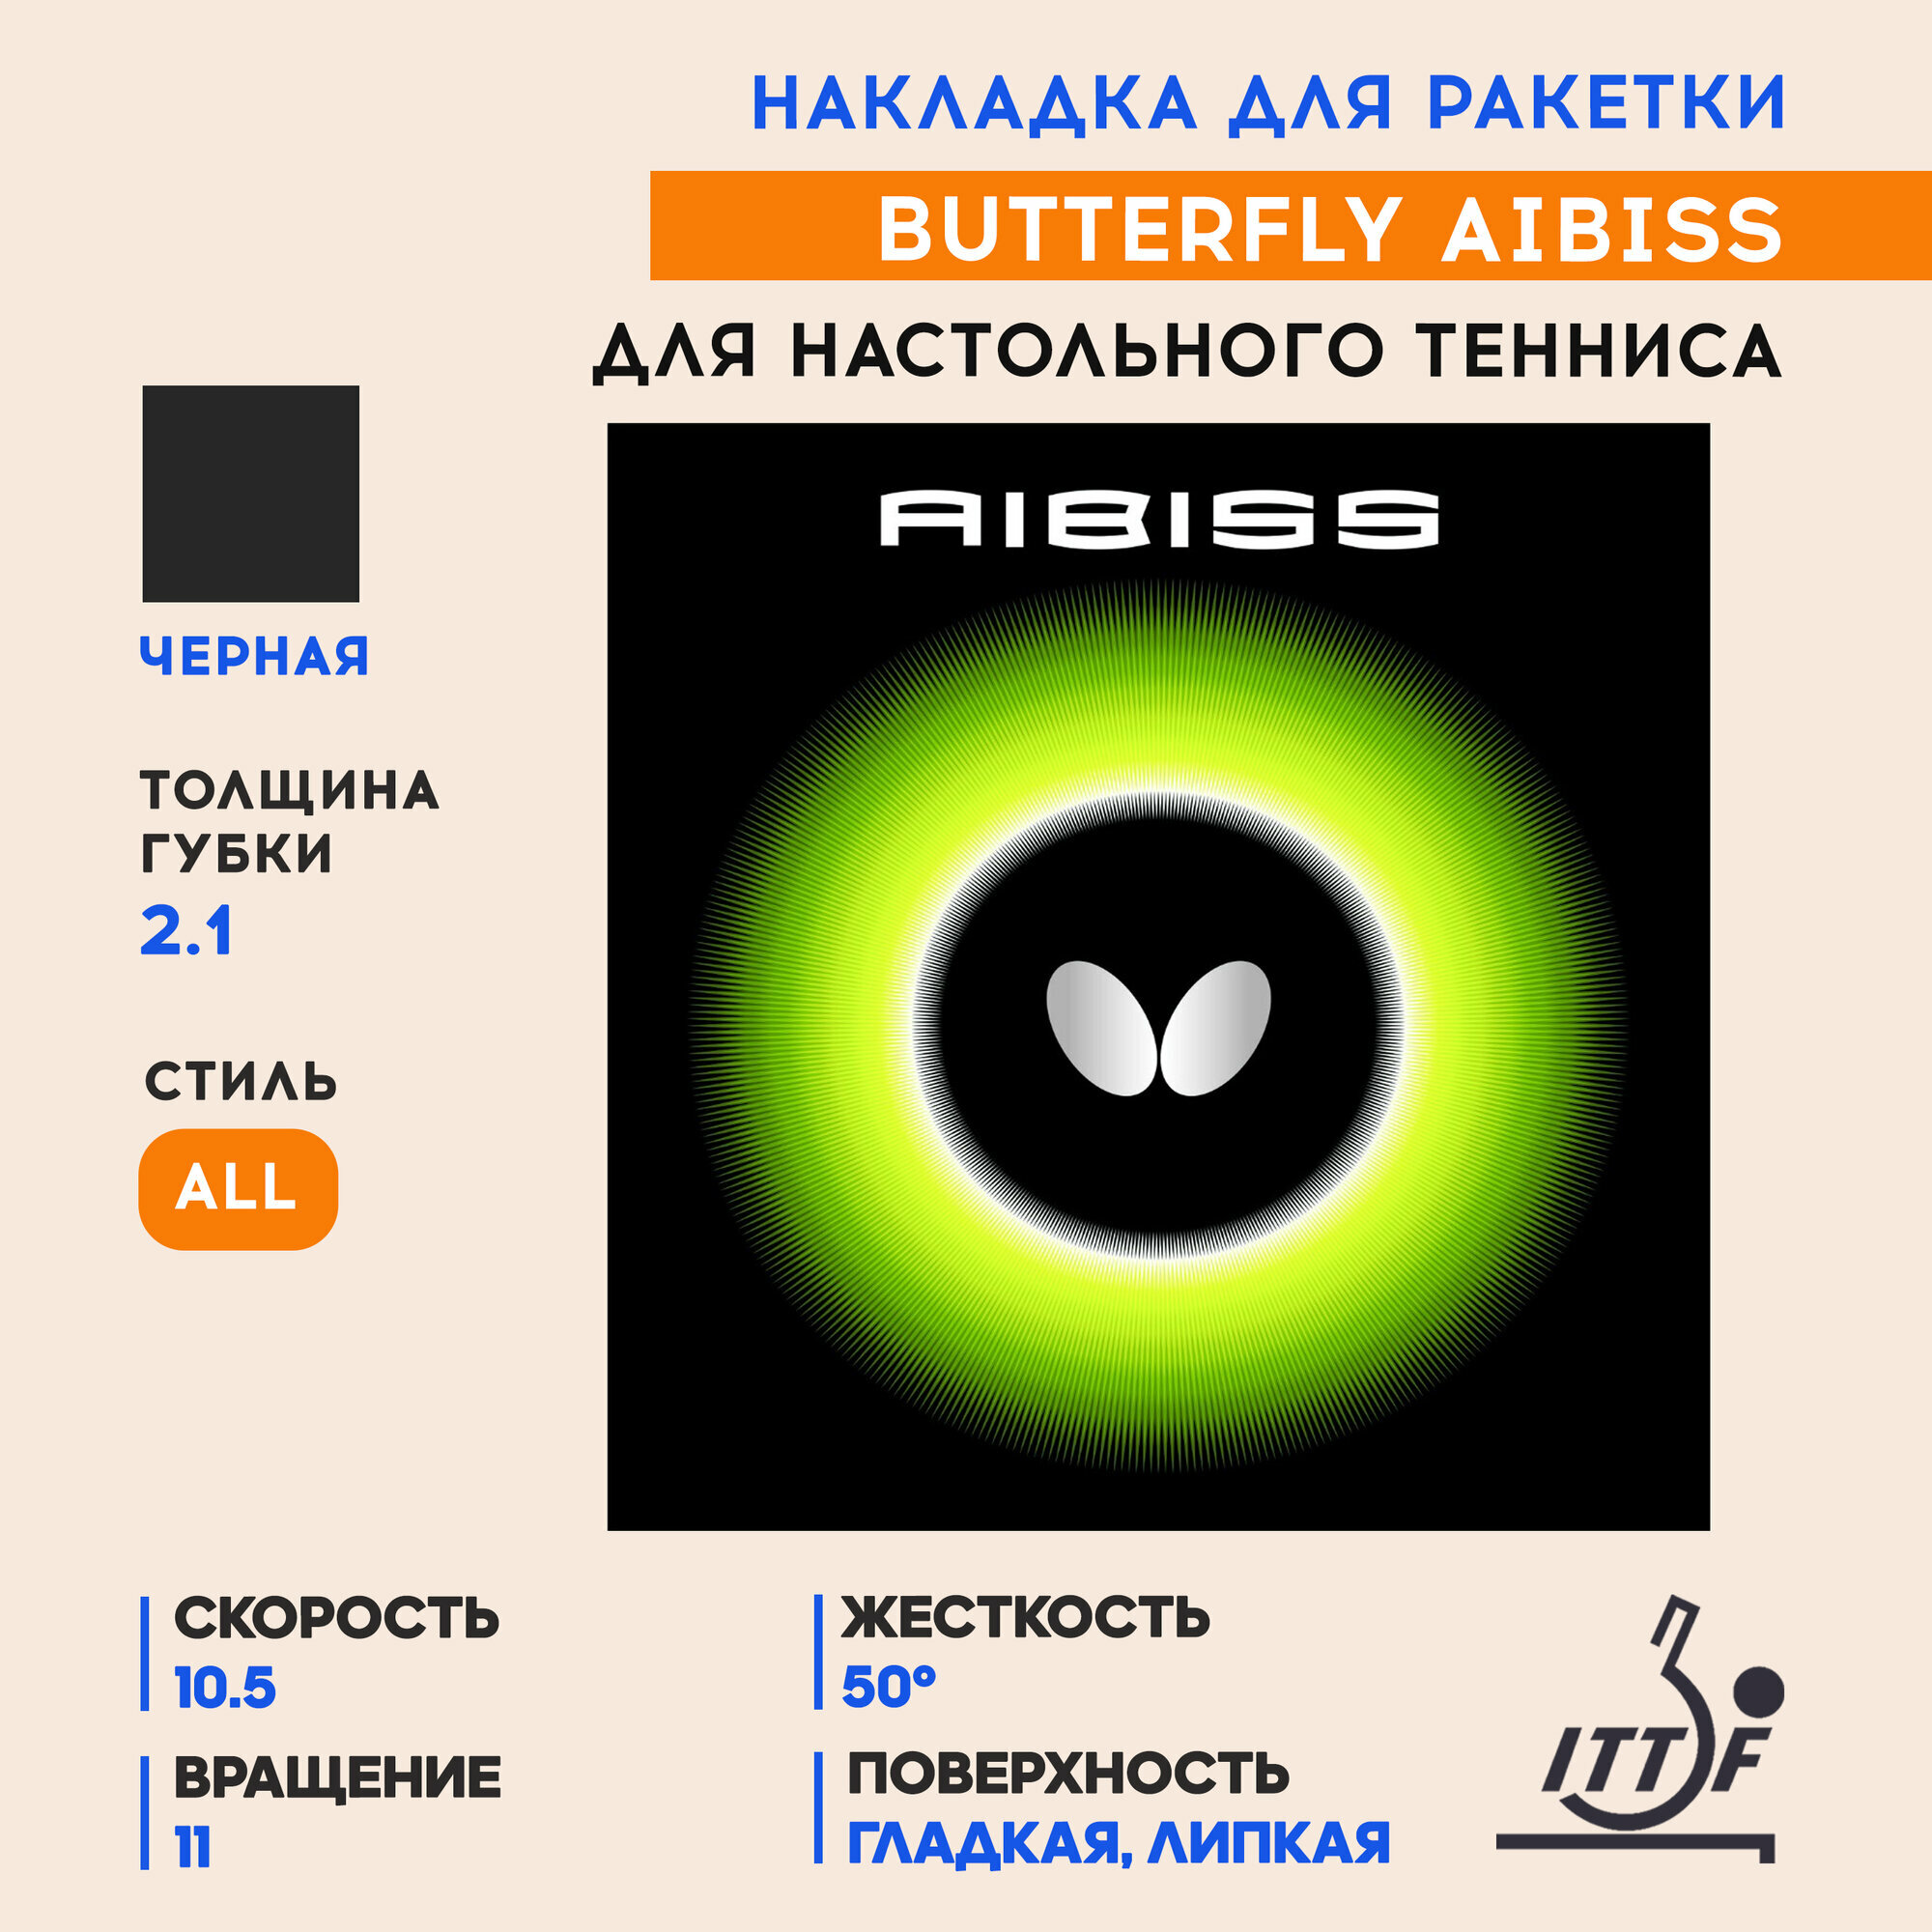 Накладка для ракетки настольного тенниса Aibiss (цвет черный, толщина 2.1)